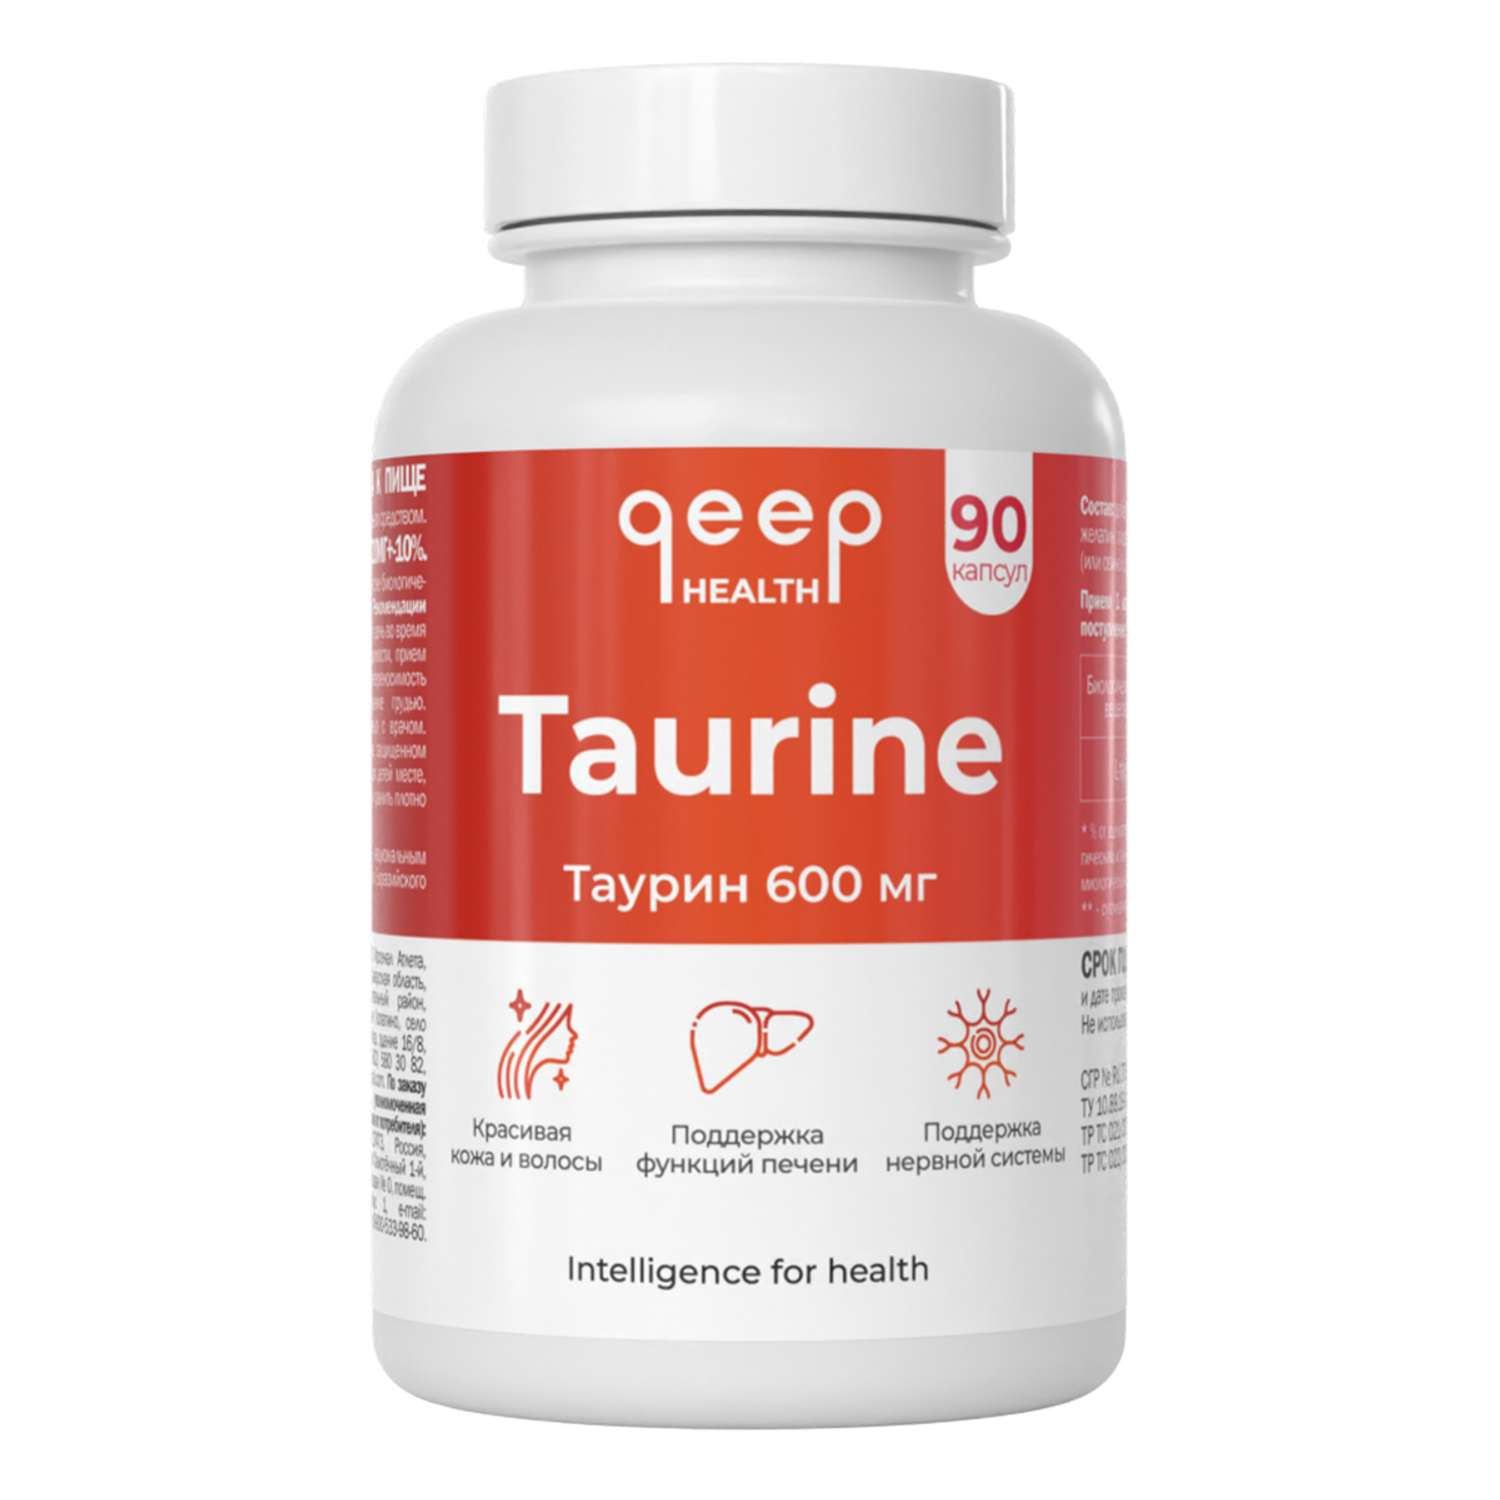 Таурин 600 мг qeep для энергии и бодрости для внимания и памяти для сосудов и сердца - фото 1